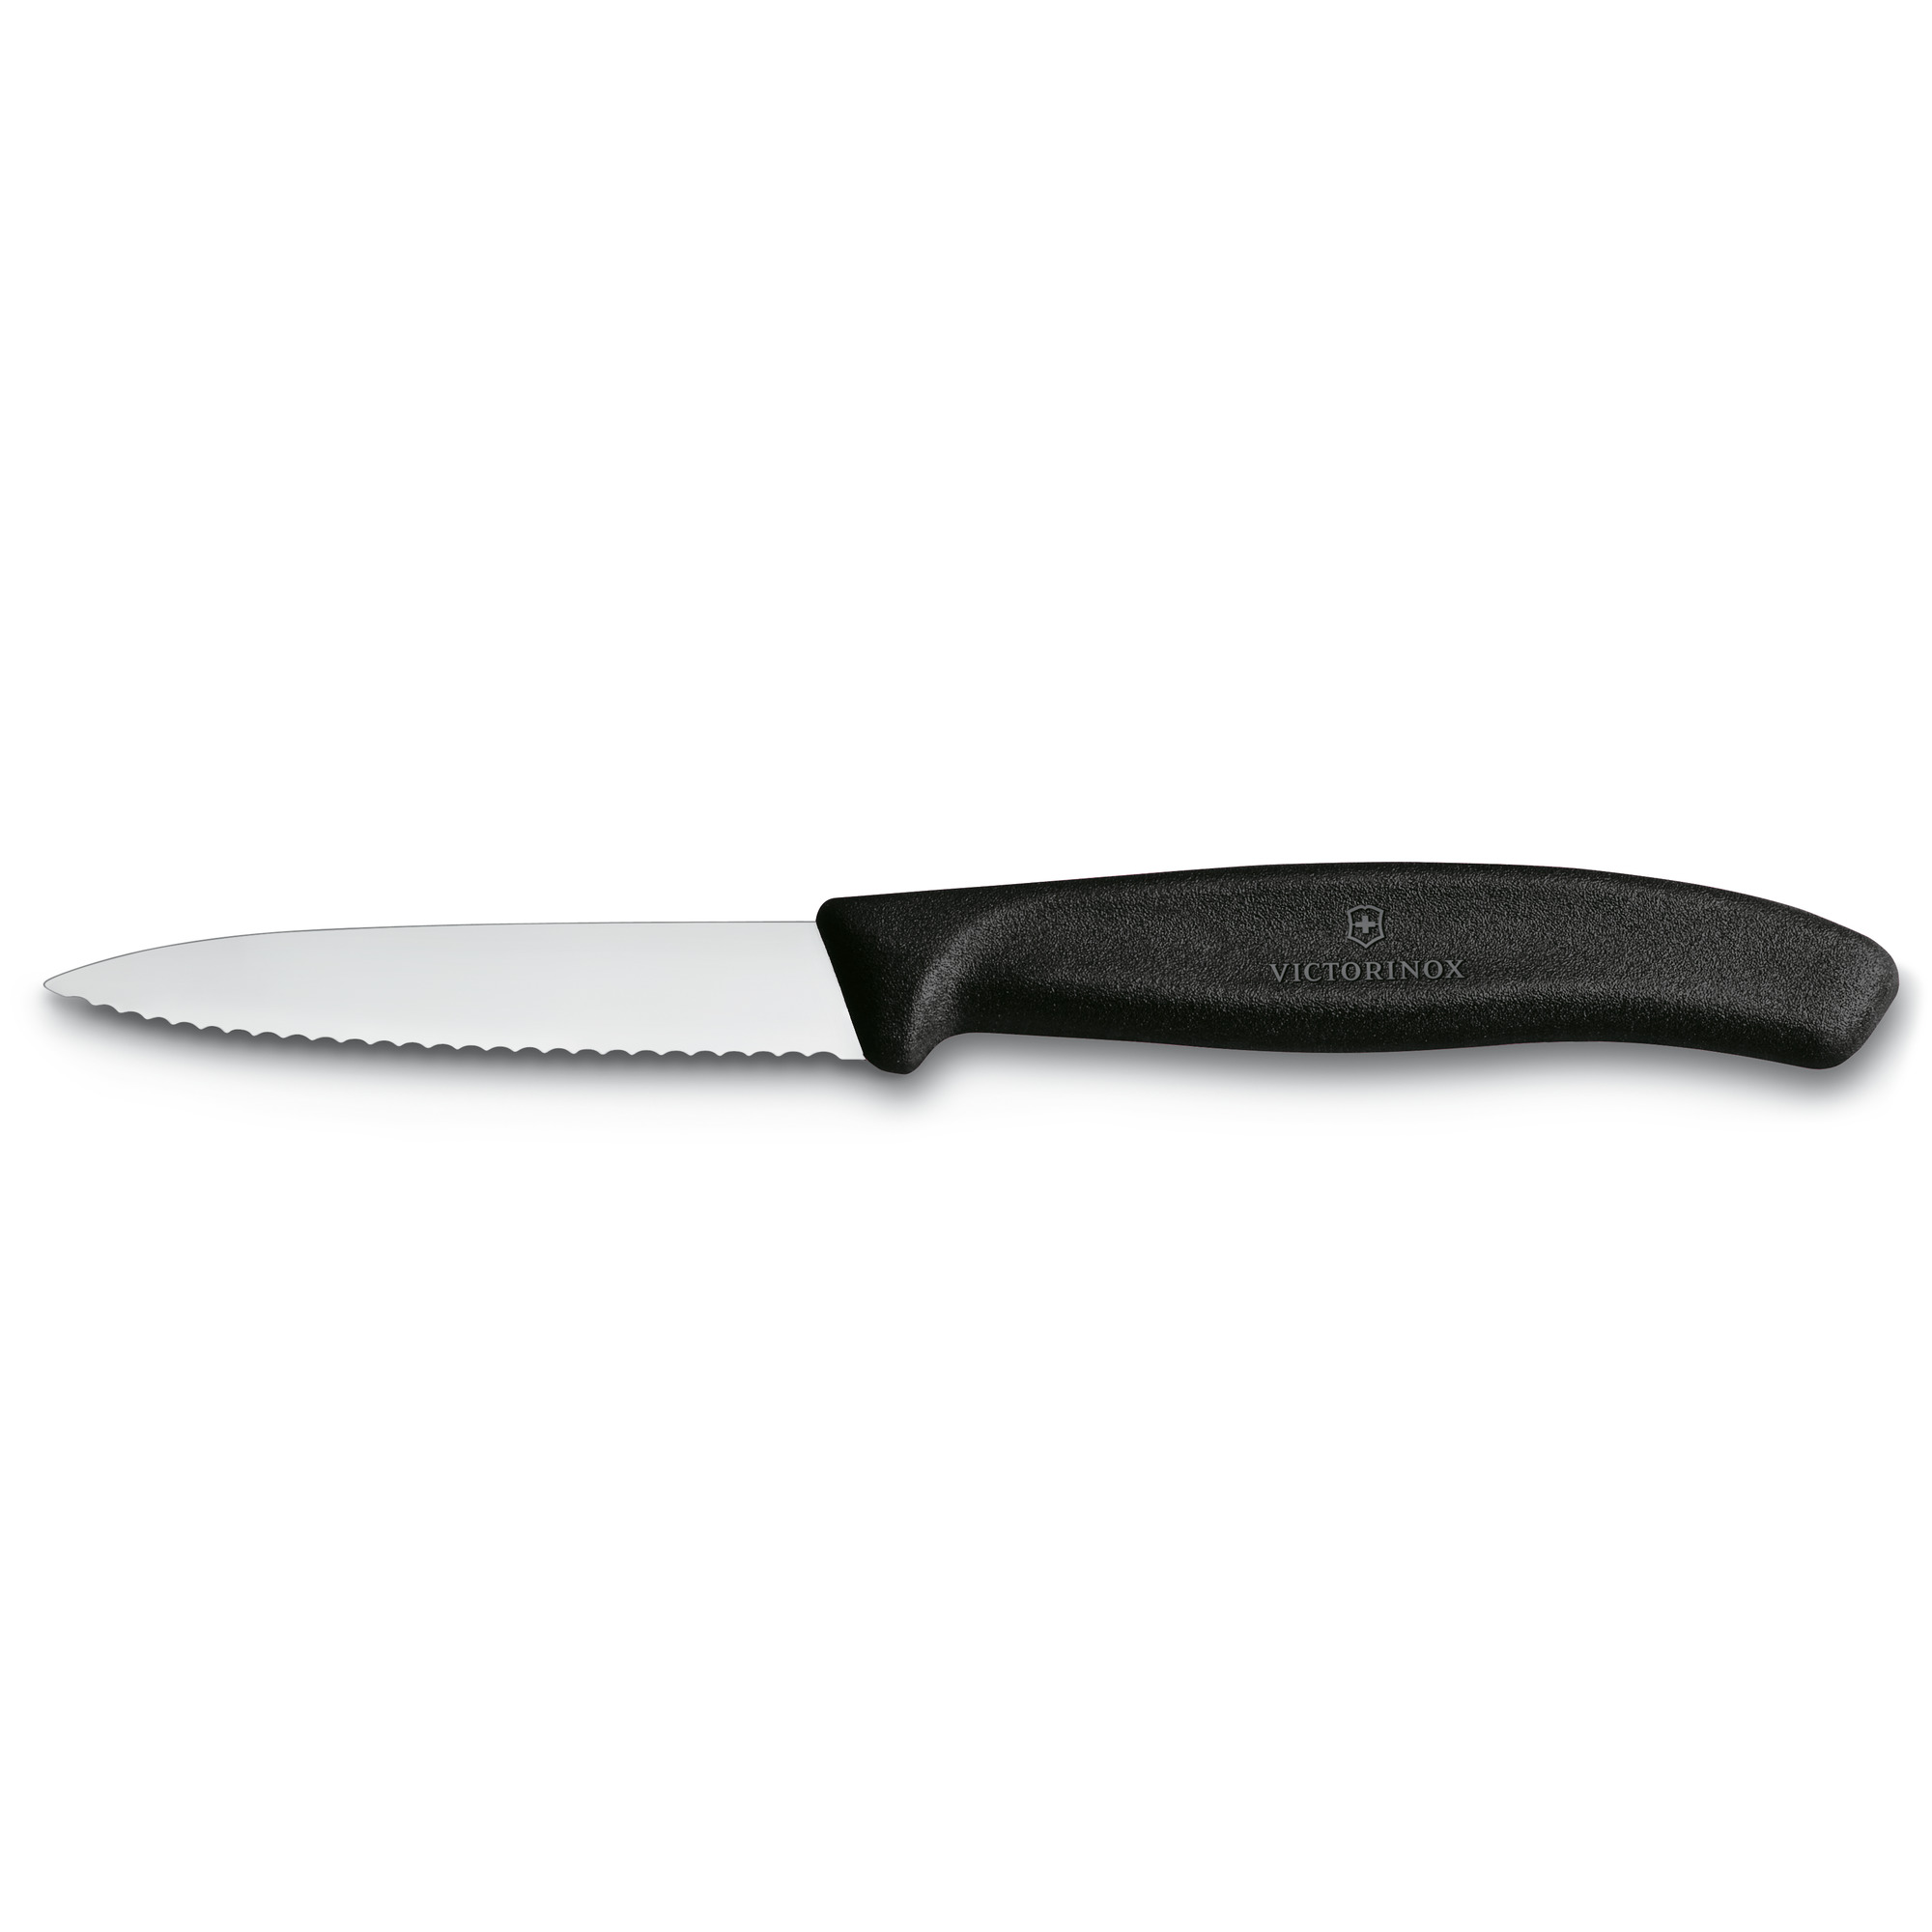 Couteau d'office Victorinox Swiss Classic - lame dentée 8 cm - pointe milieu - manche noir